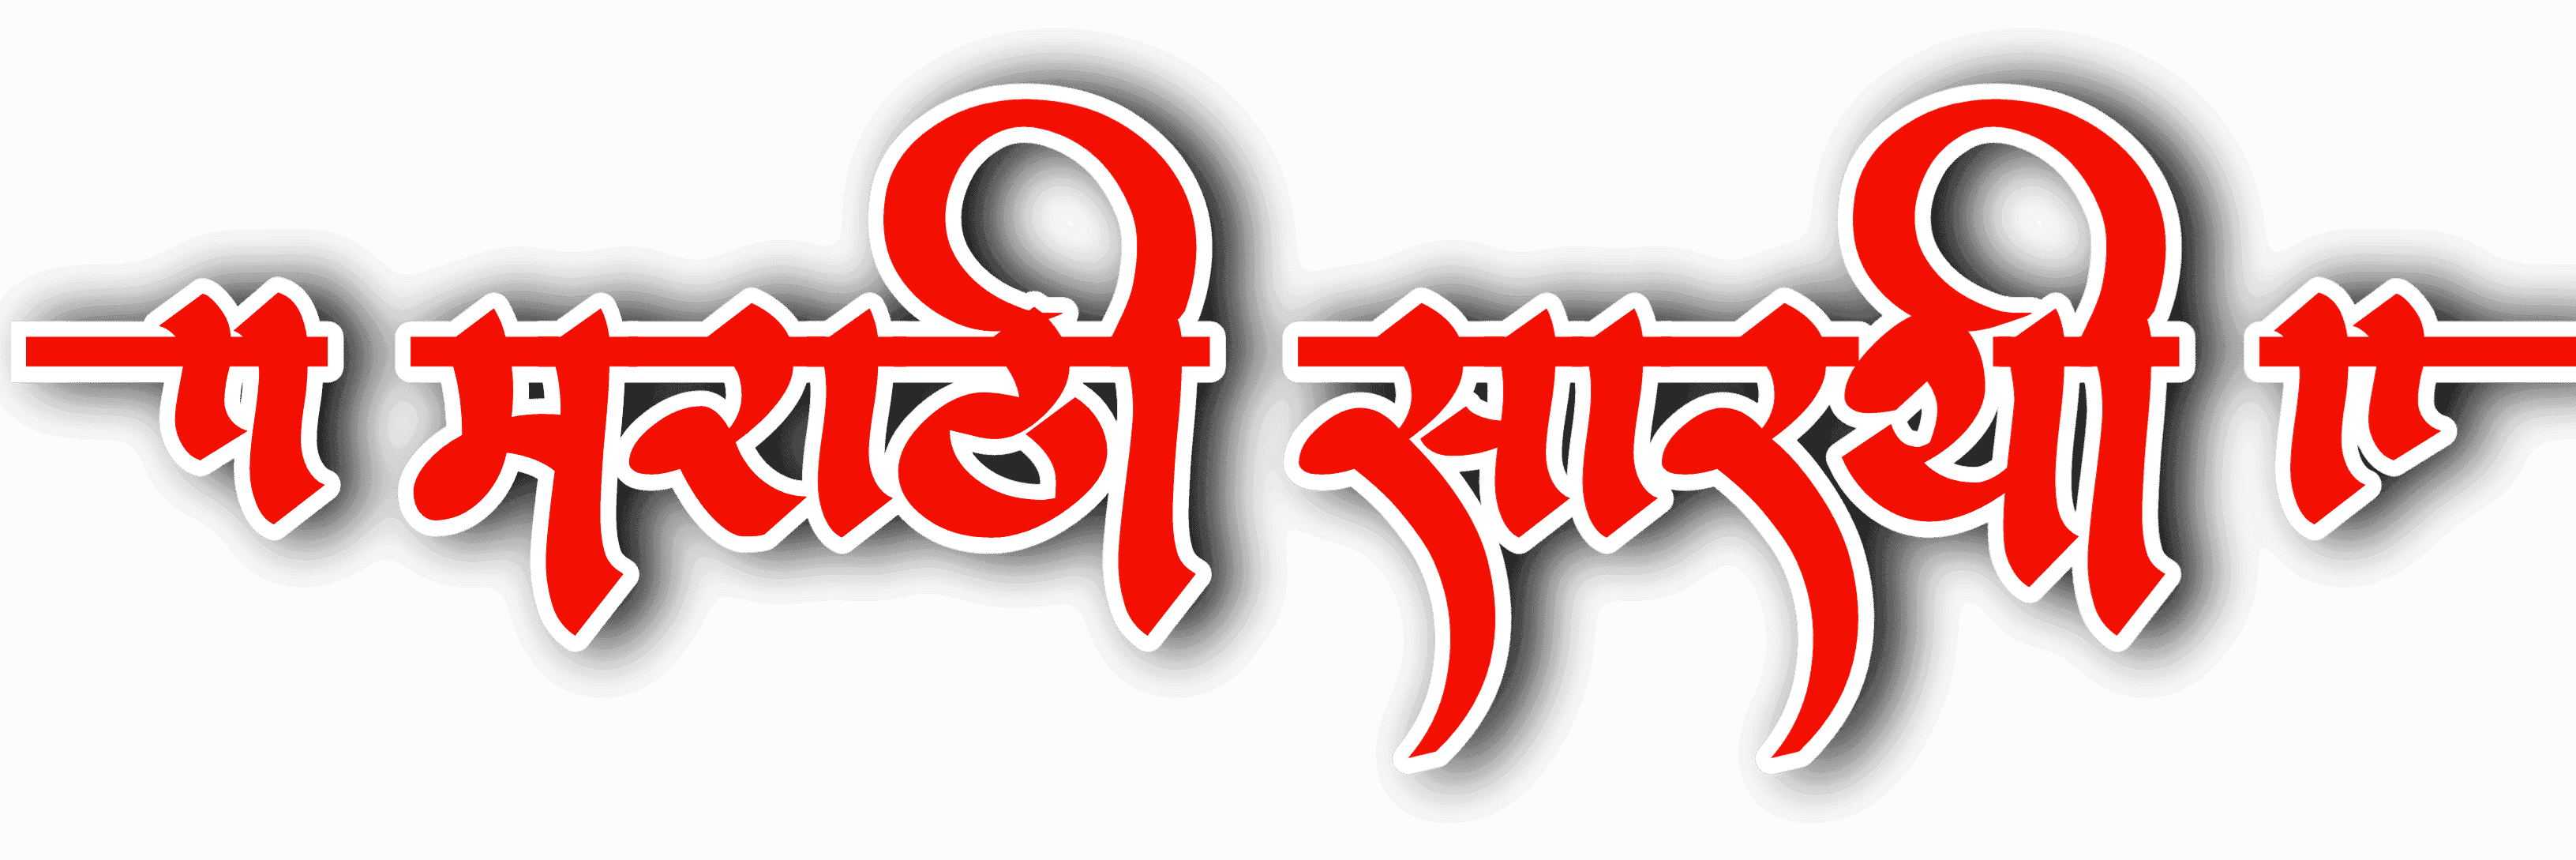 Marathi sarathi7